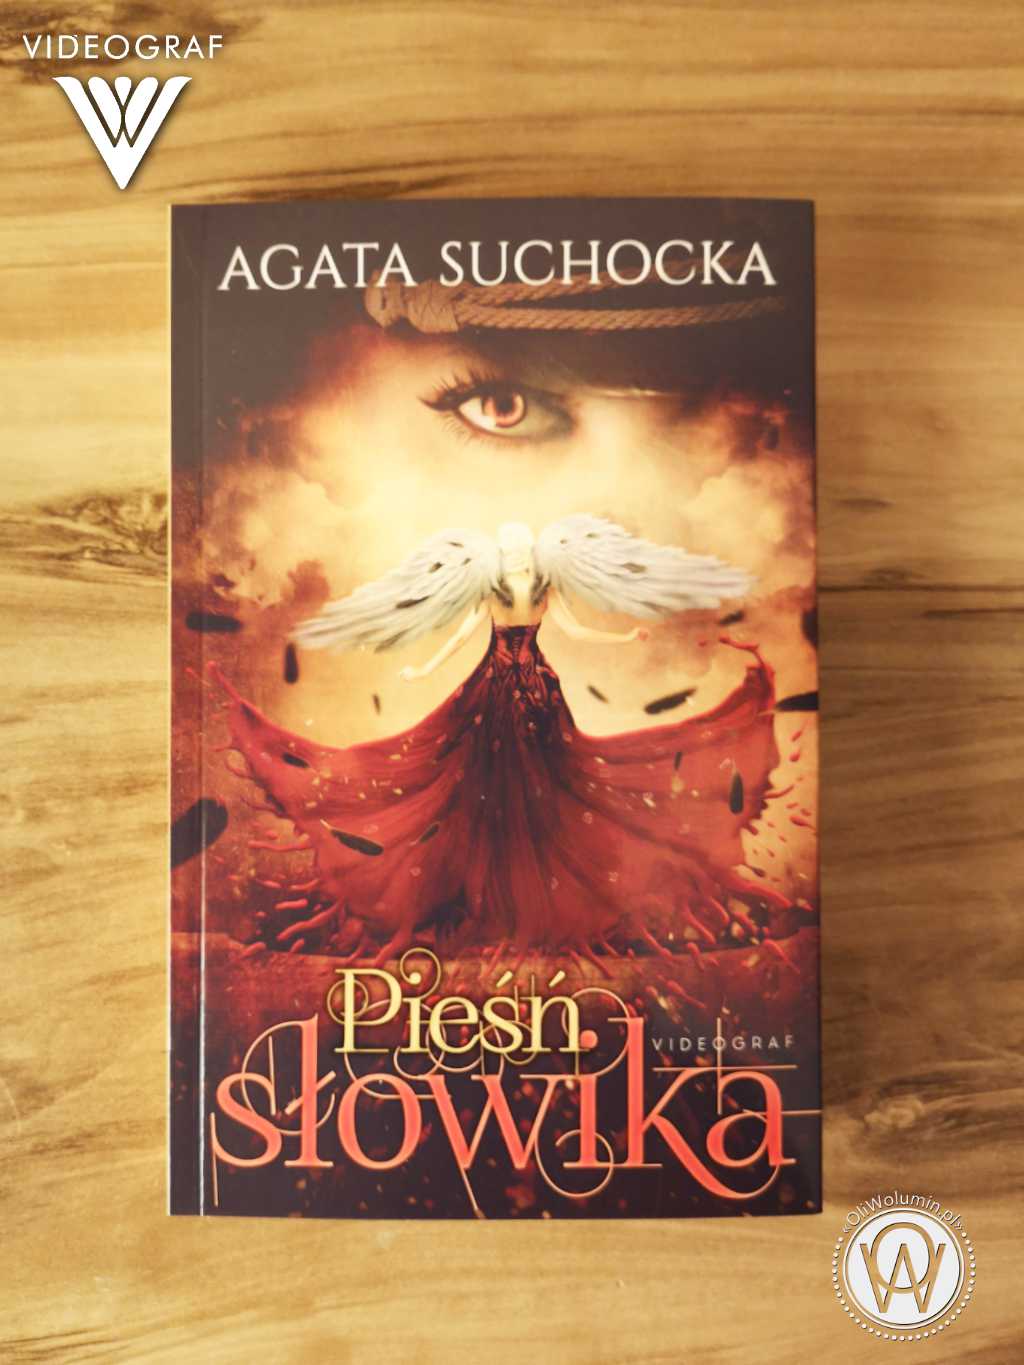 Pieśń słowika - Agata Suchocka